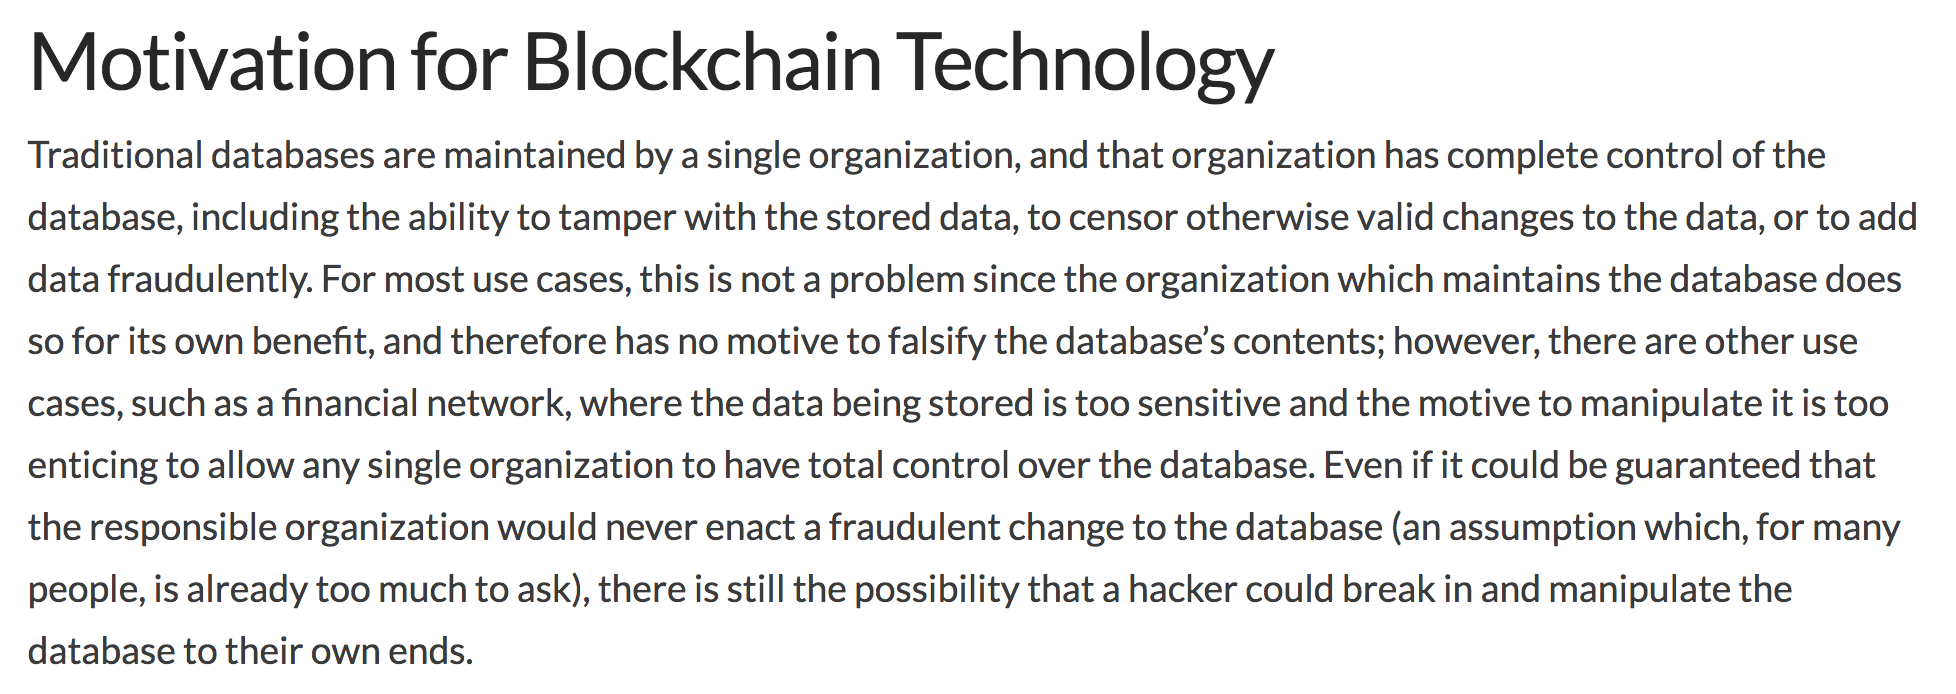 Text explaining benefits of blockchain over database